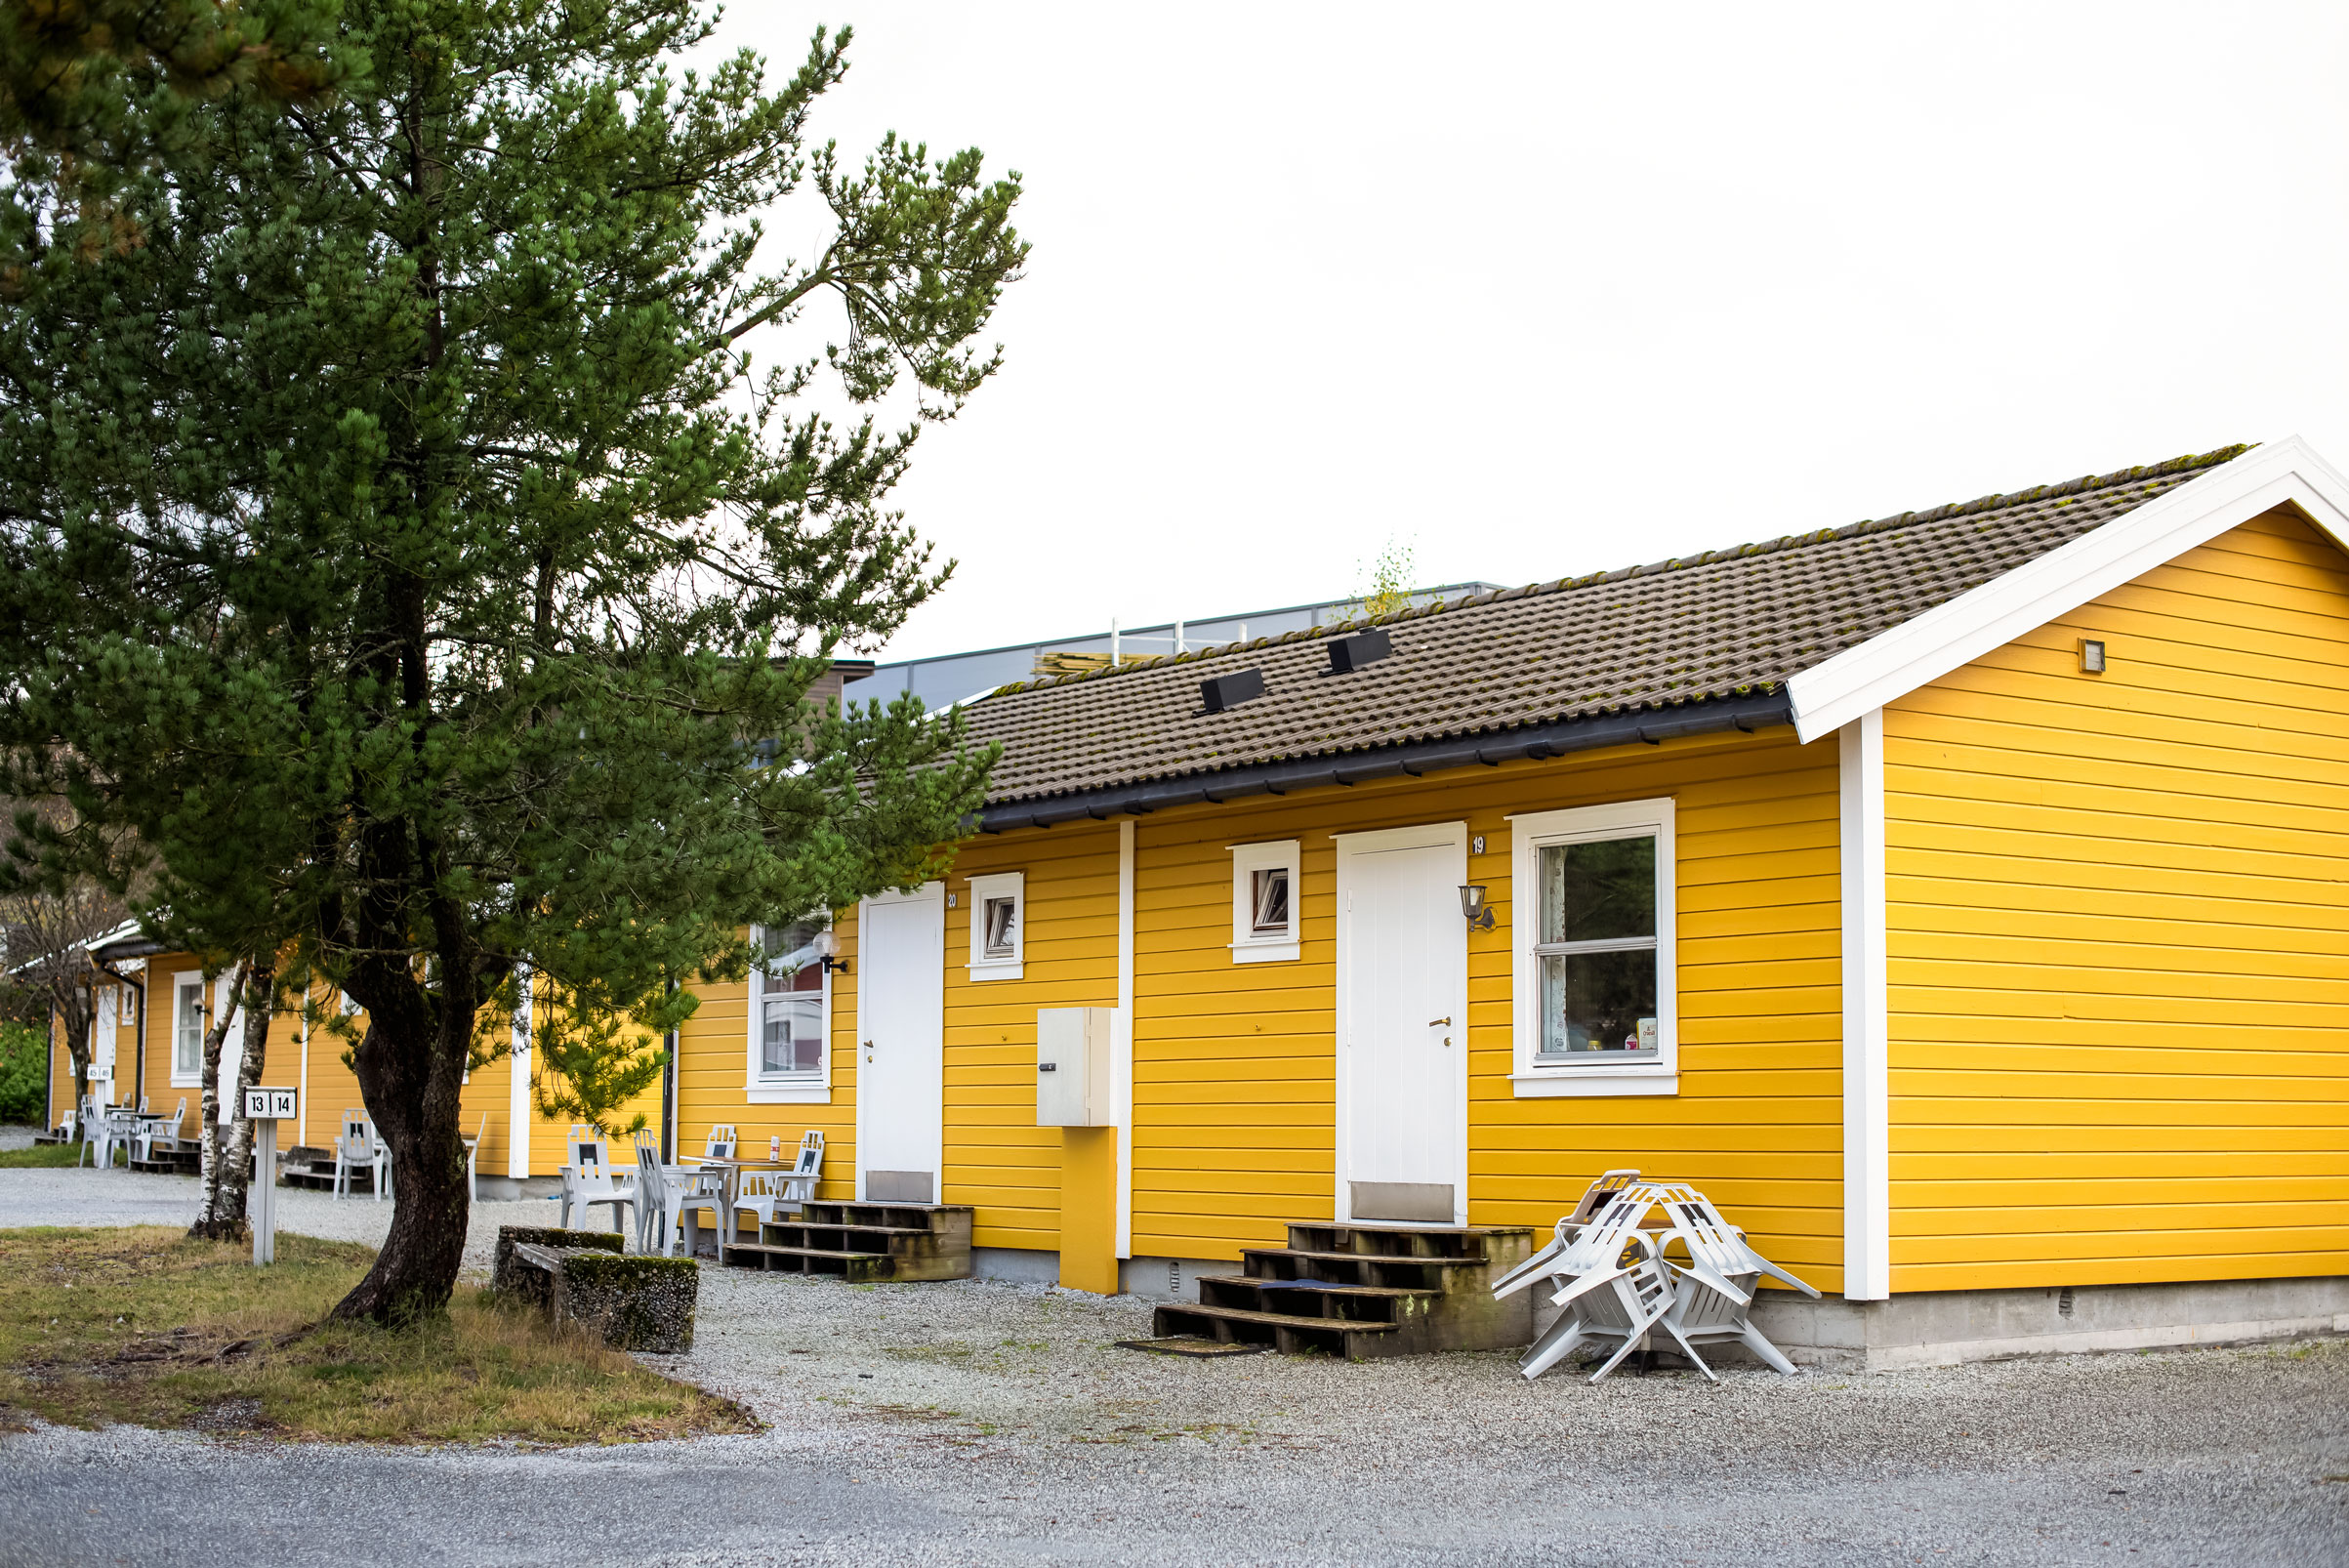 Campsite in Bergen